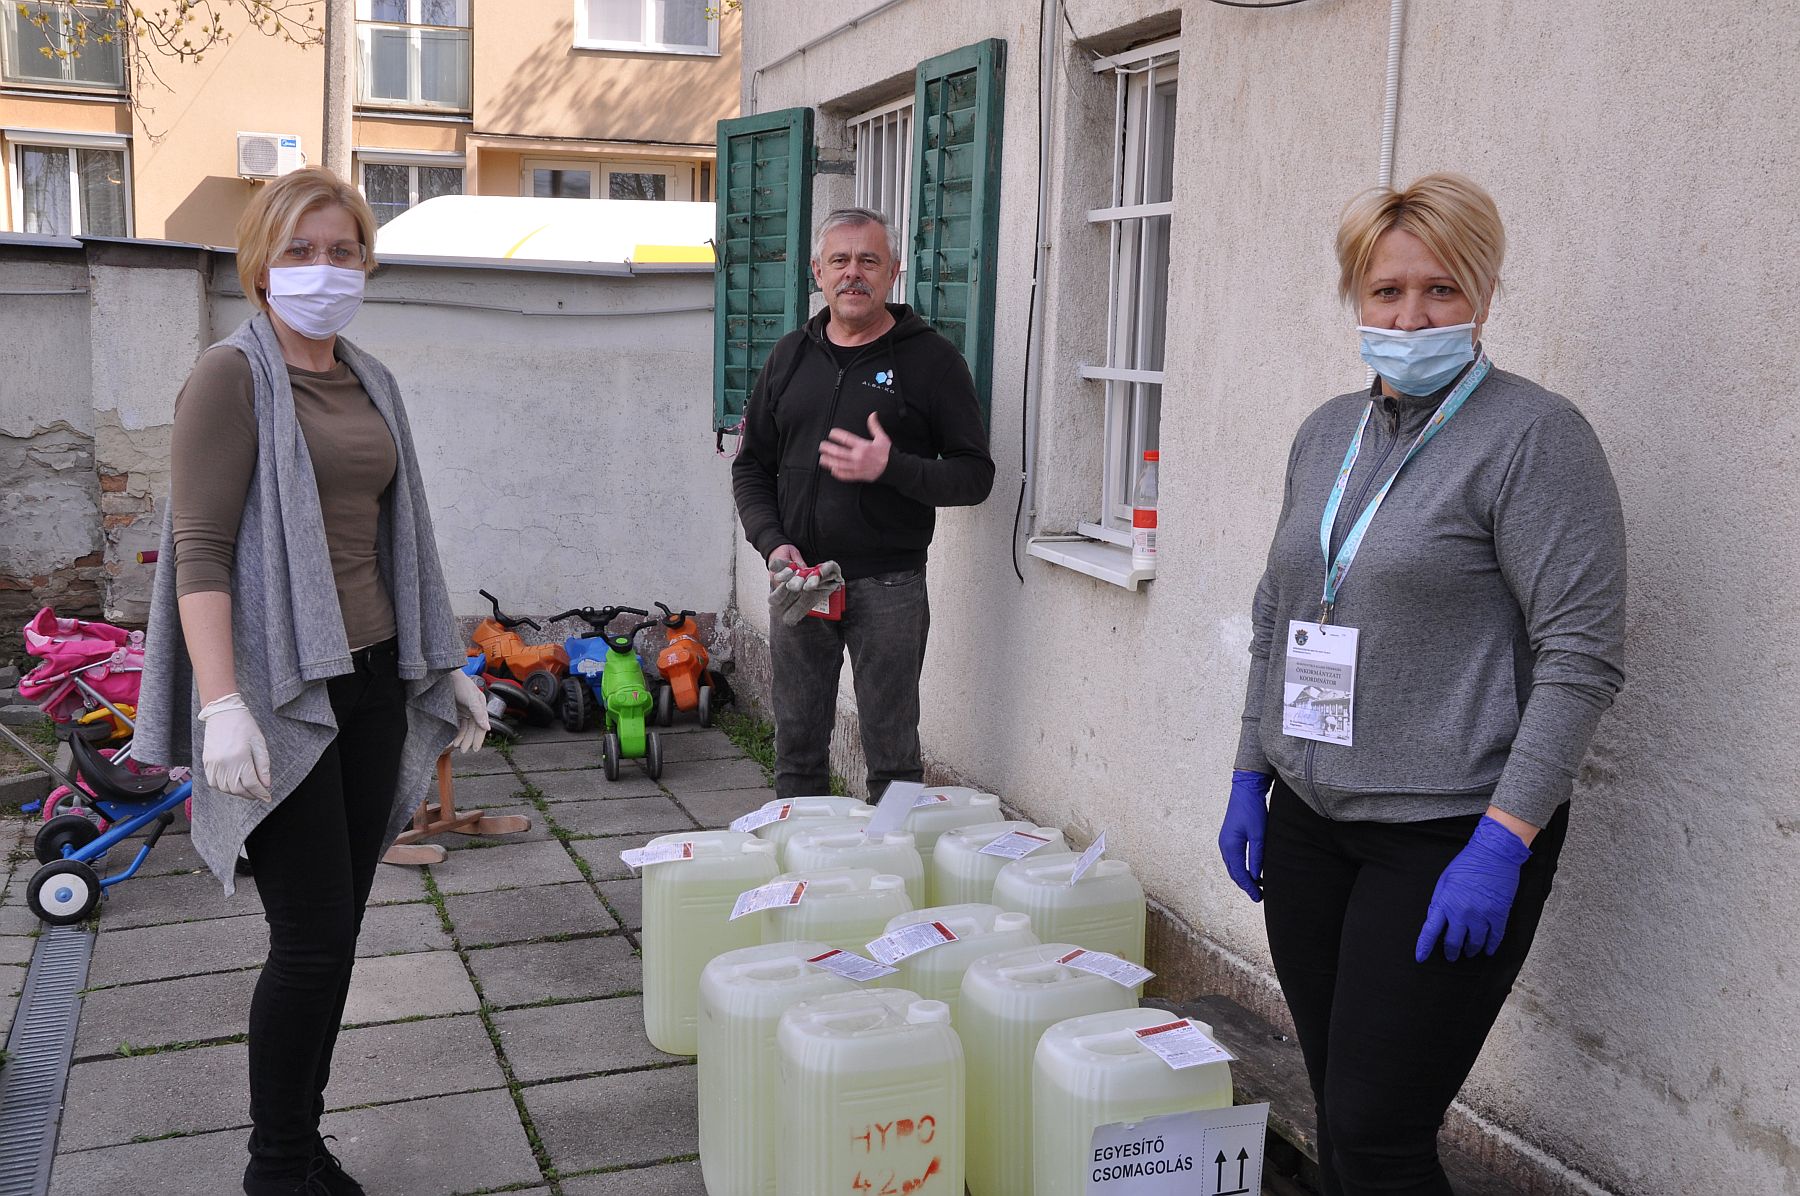 Háromszáz liter hypót adományoztak a Családok Átmeneti Otthonának